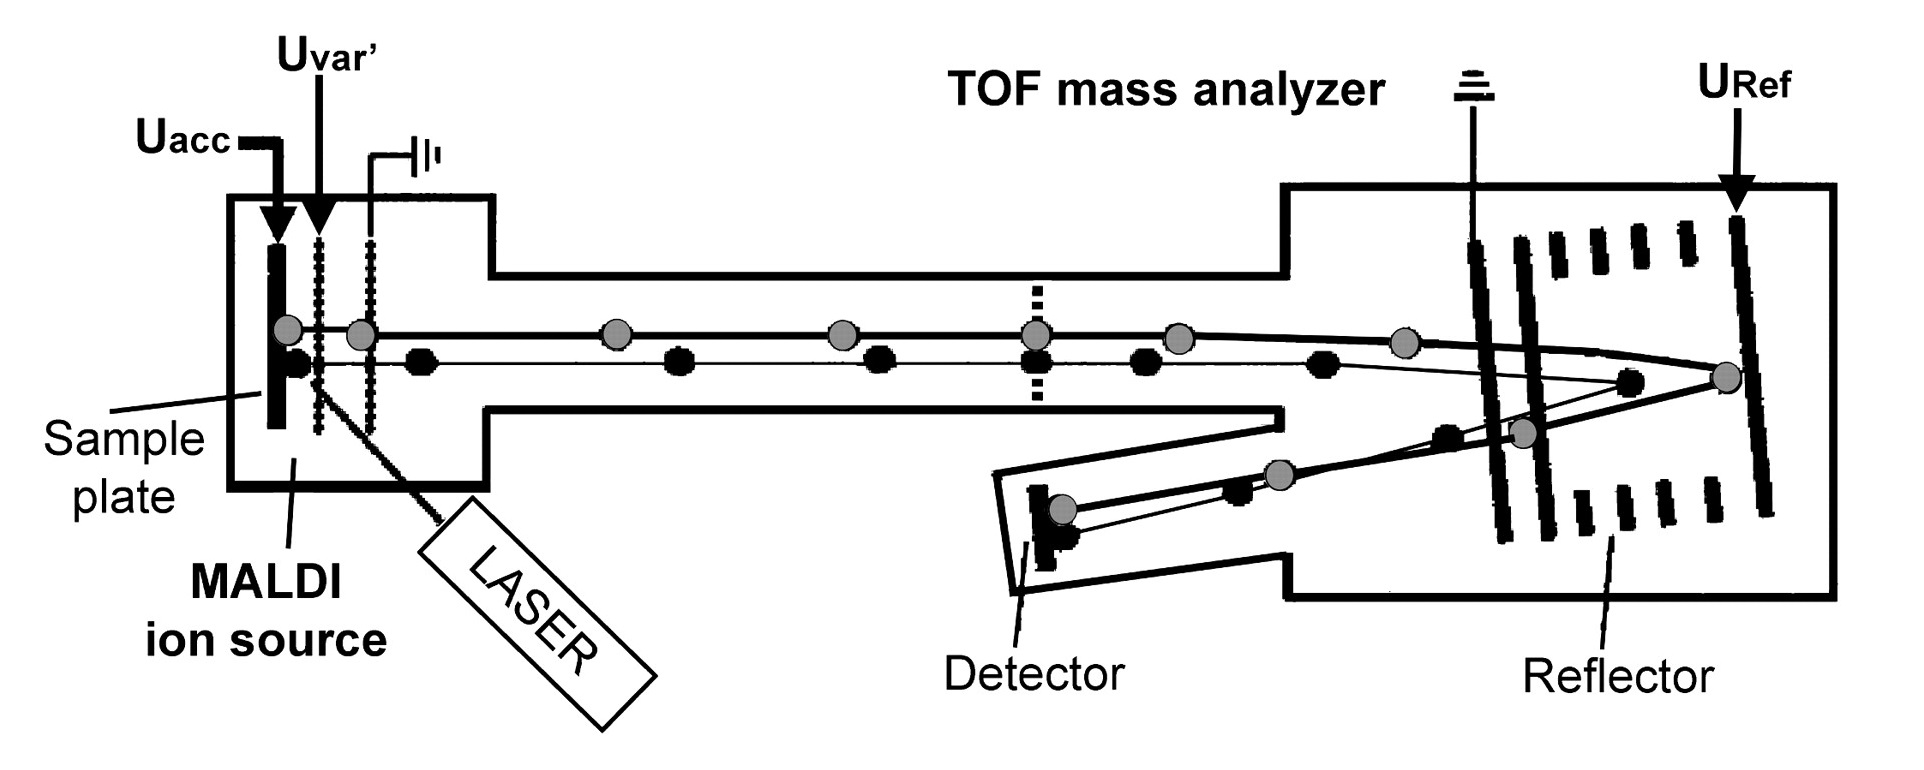 Processus de la désorption laser assistée par matrice(MALDI) pour la production des ions et des analyseurs par temps de vol (TOF) pour leur détection